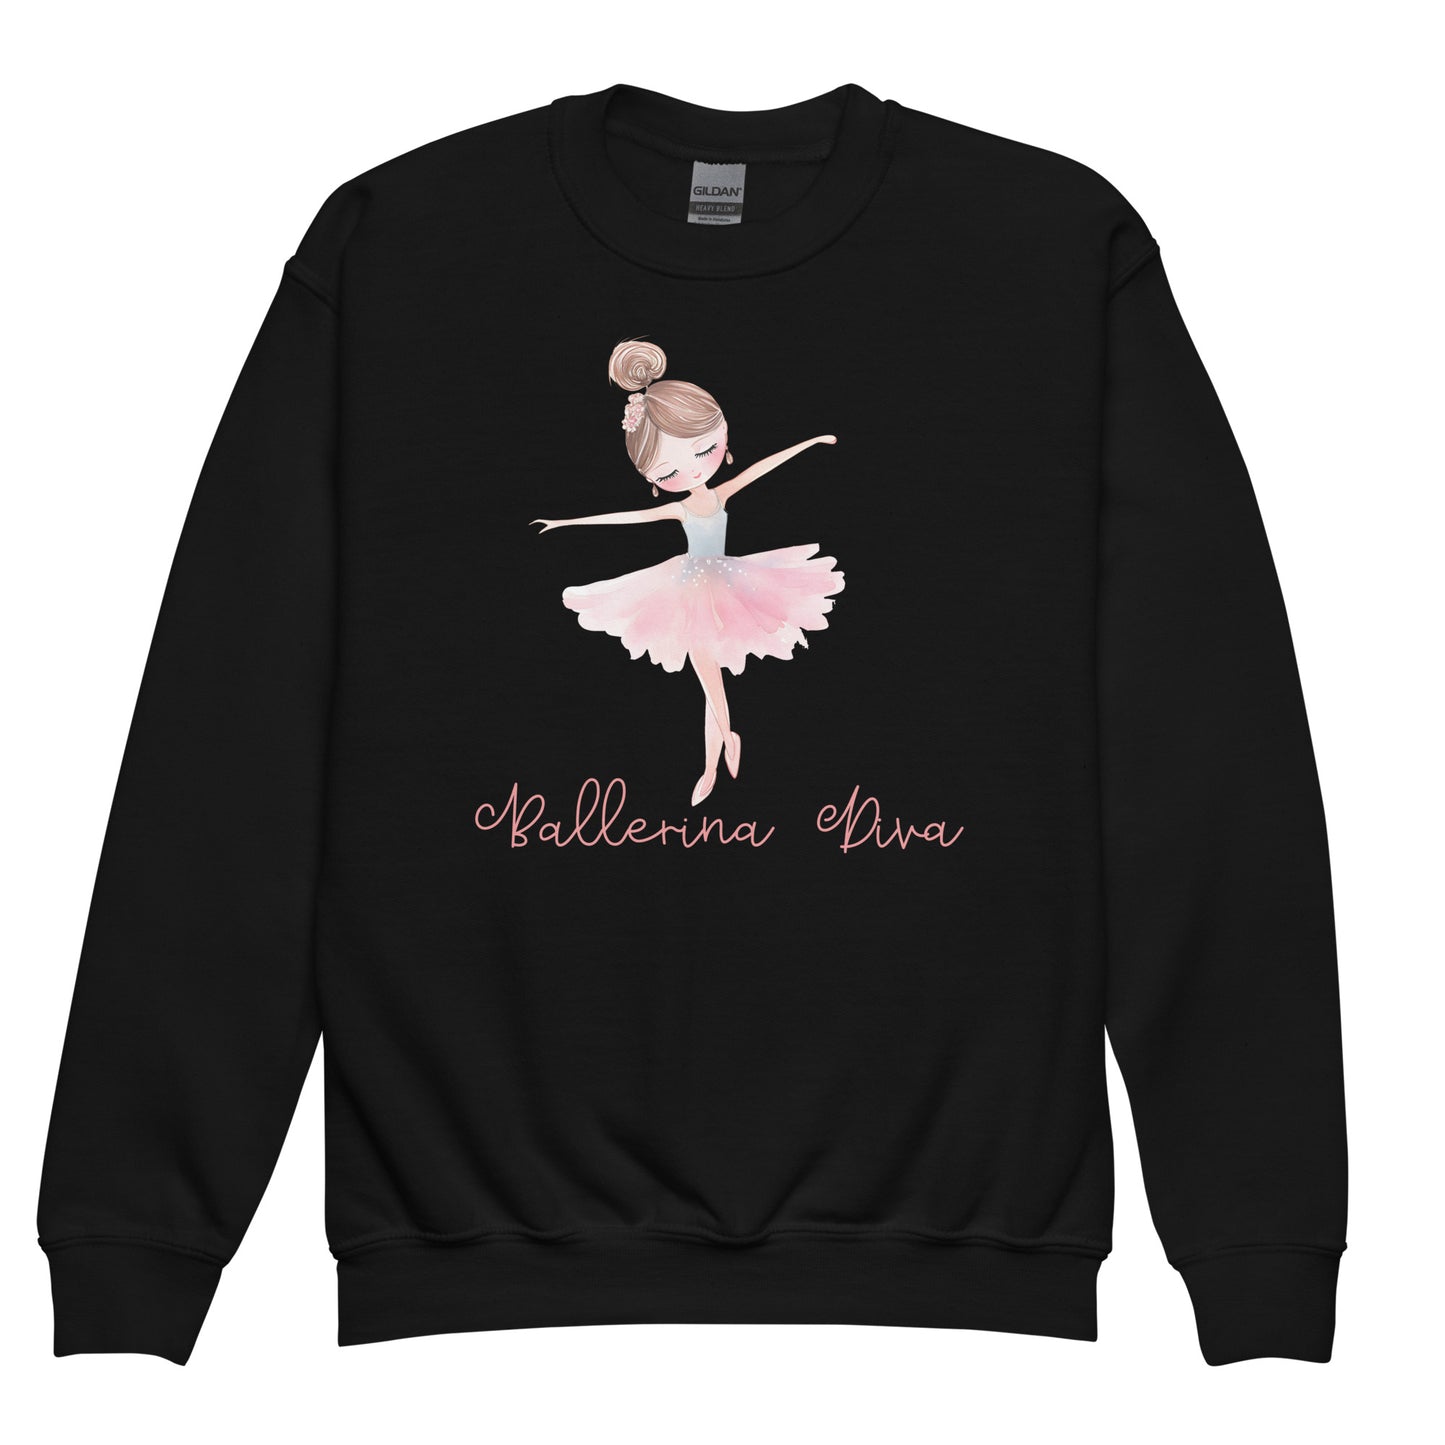 Kids Black Sweatshirt - Ballerina Diva, Ballerina Graphic Front View